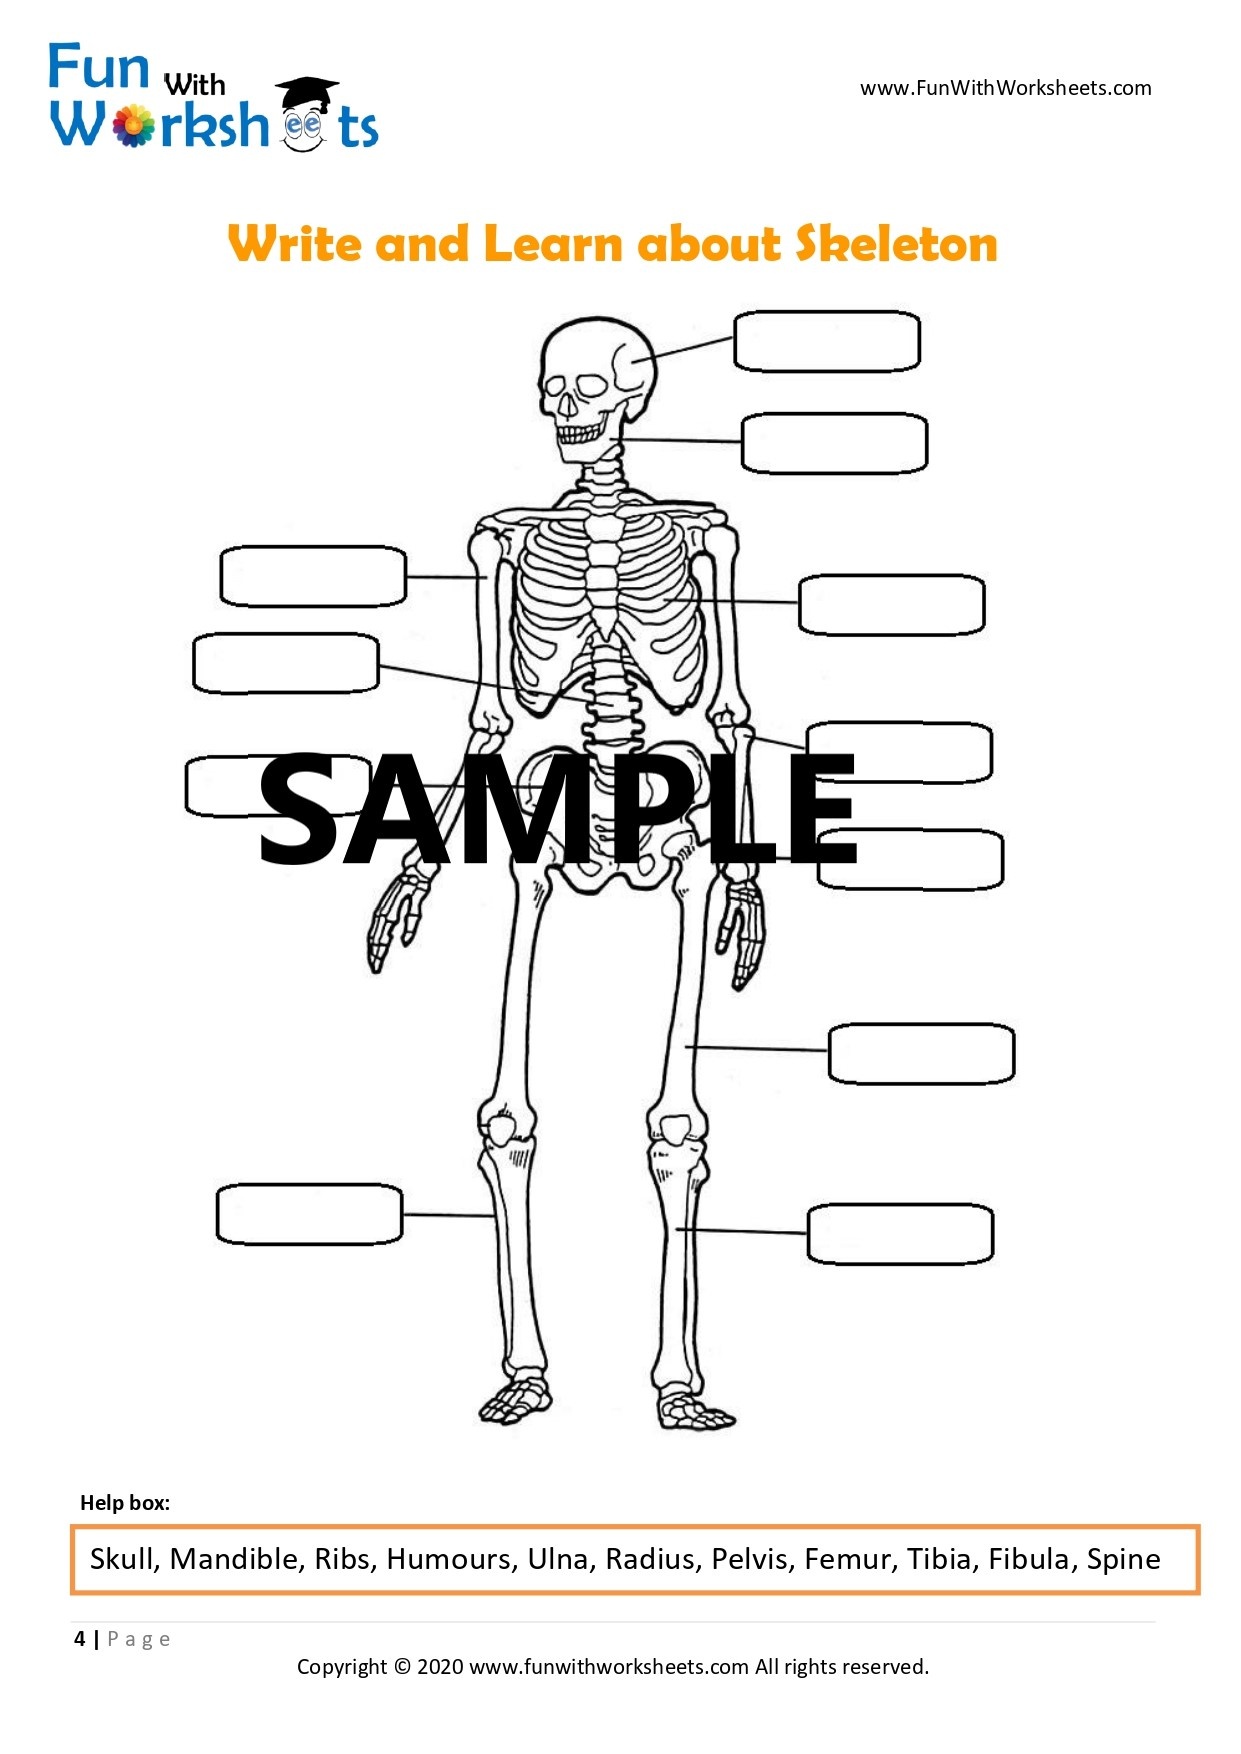 Skeleton Anatomy Activity  Moving Skeleton Craft  Instant Download (PDF) With Skeletal System Labeling Worksheet Pdf